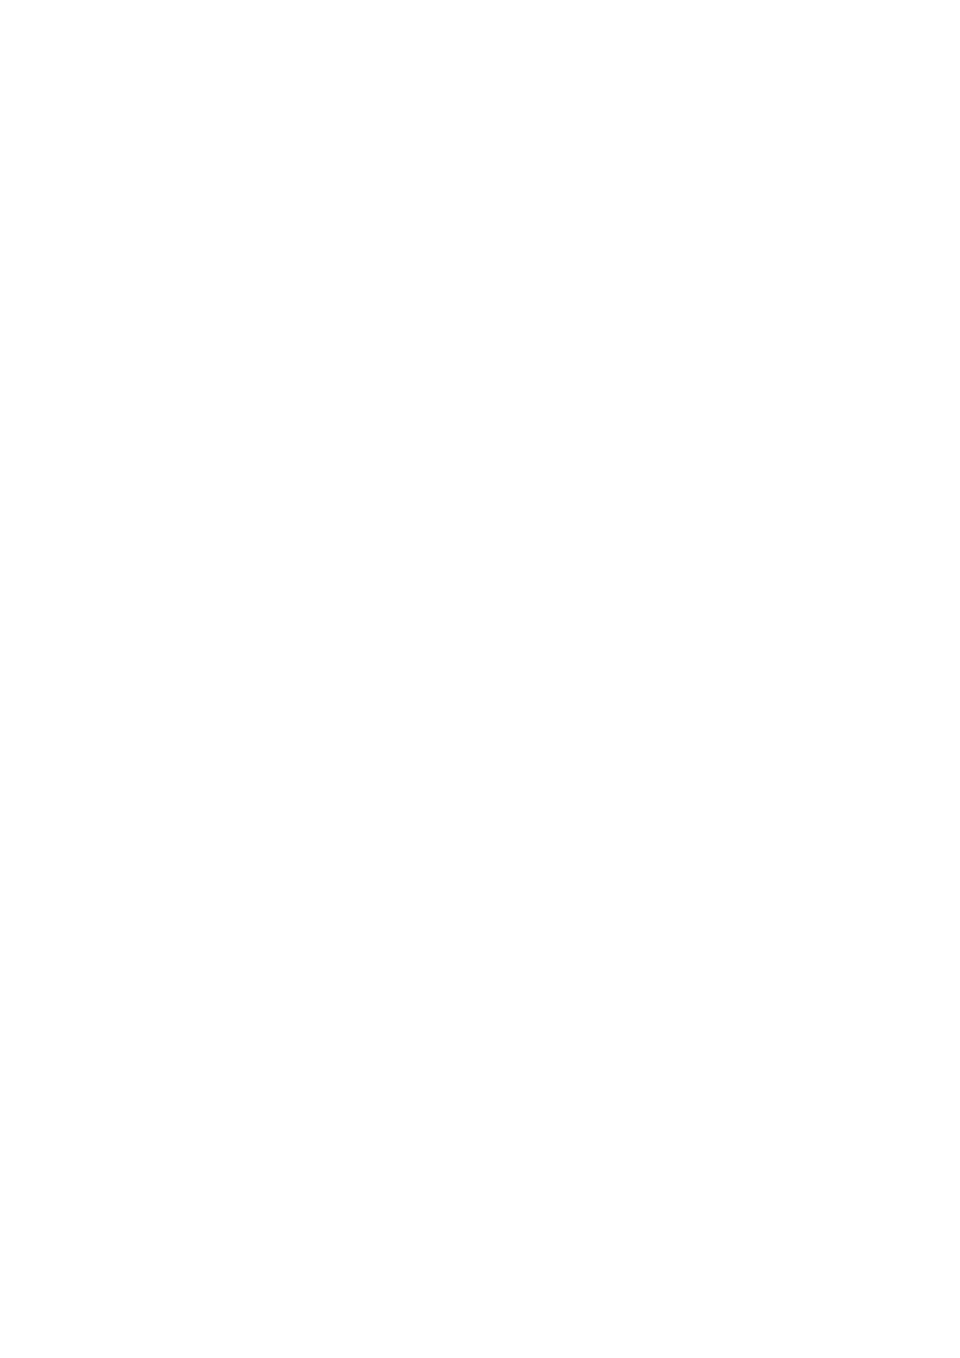 Skæhkere sijte - Budsjett 2011 og 2012 i forhold til reindriftsfondets disposisjoner Jijnevaerie sameby - Søknad om oppføring av reingjerde - Pålfjellet i Lierne kommune Odd Bjørnar Bjørkås - Søknad